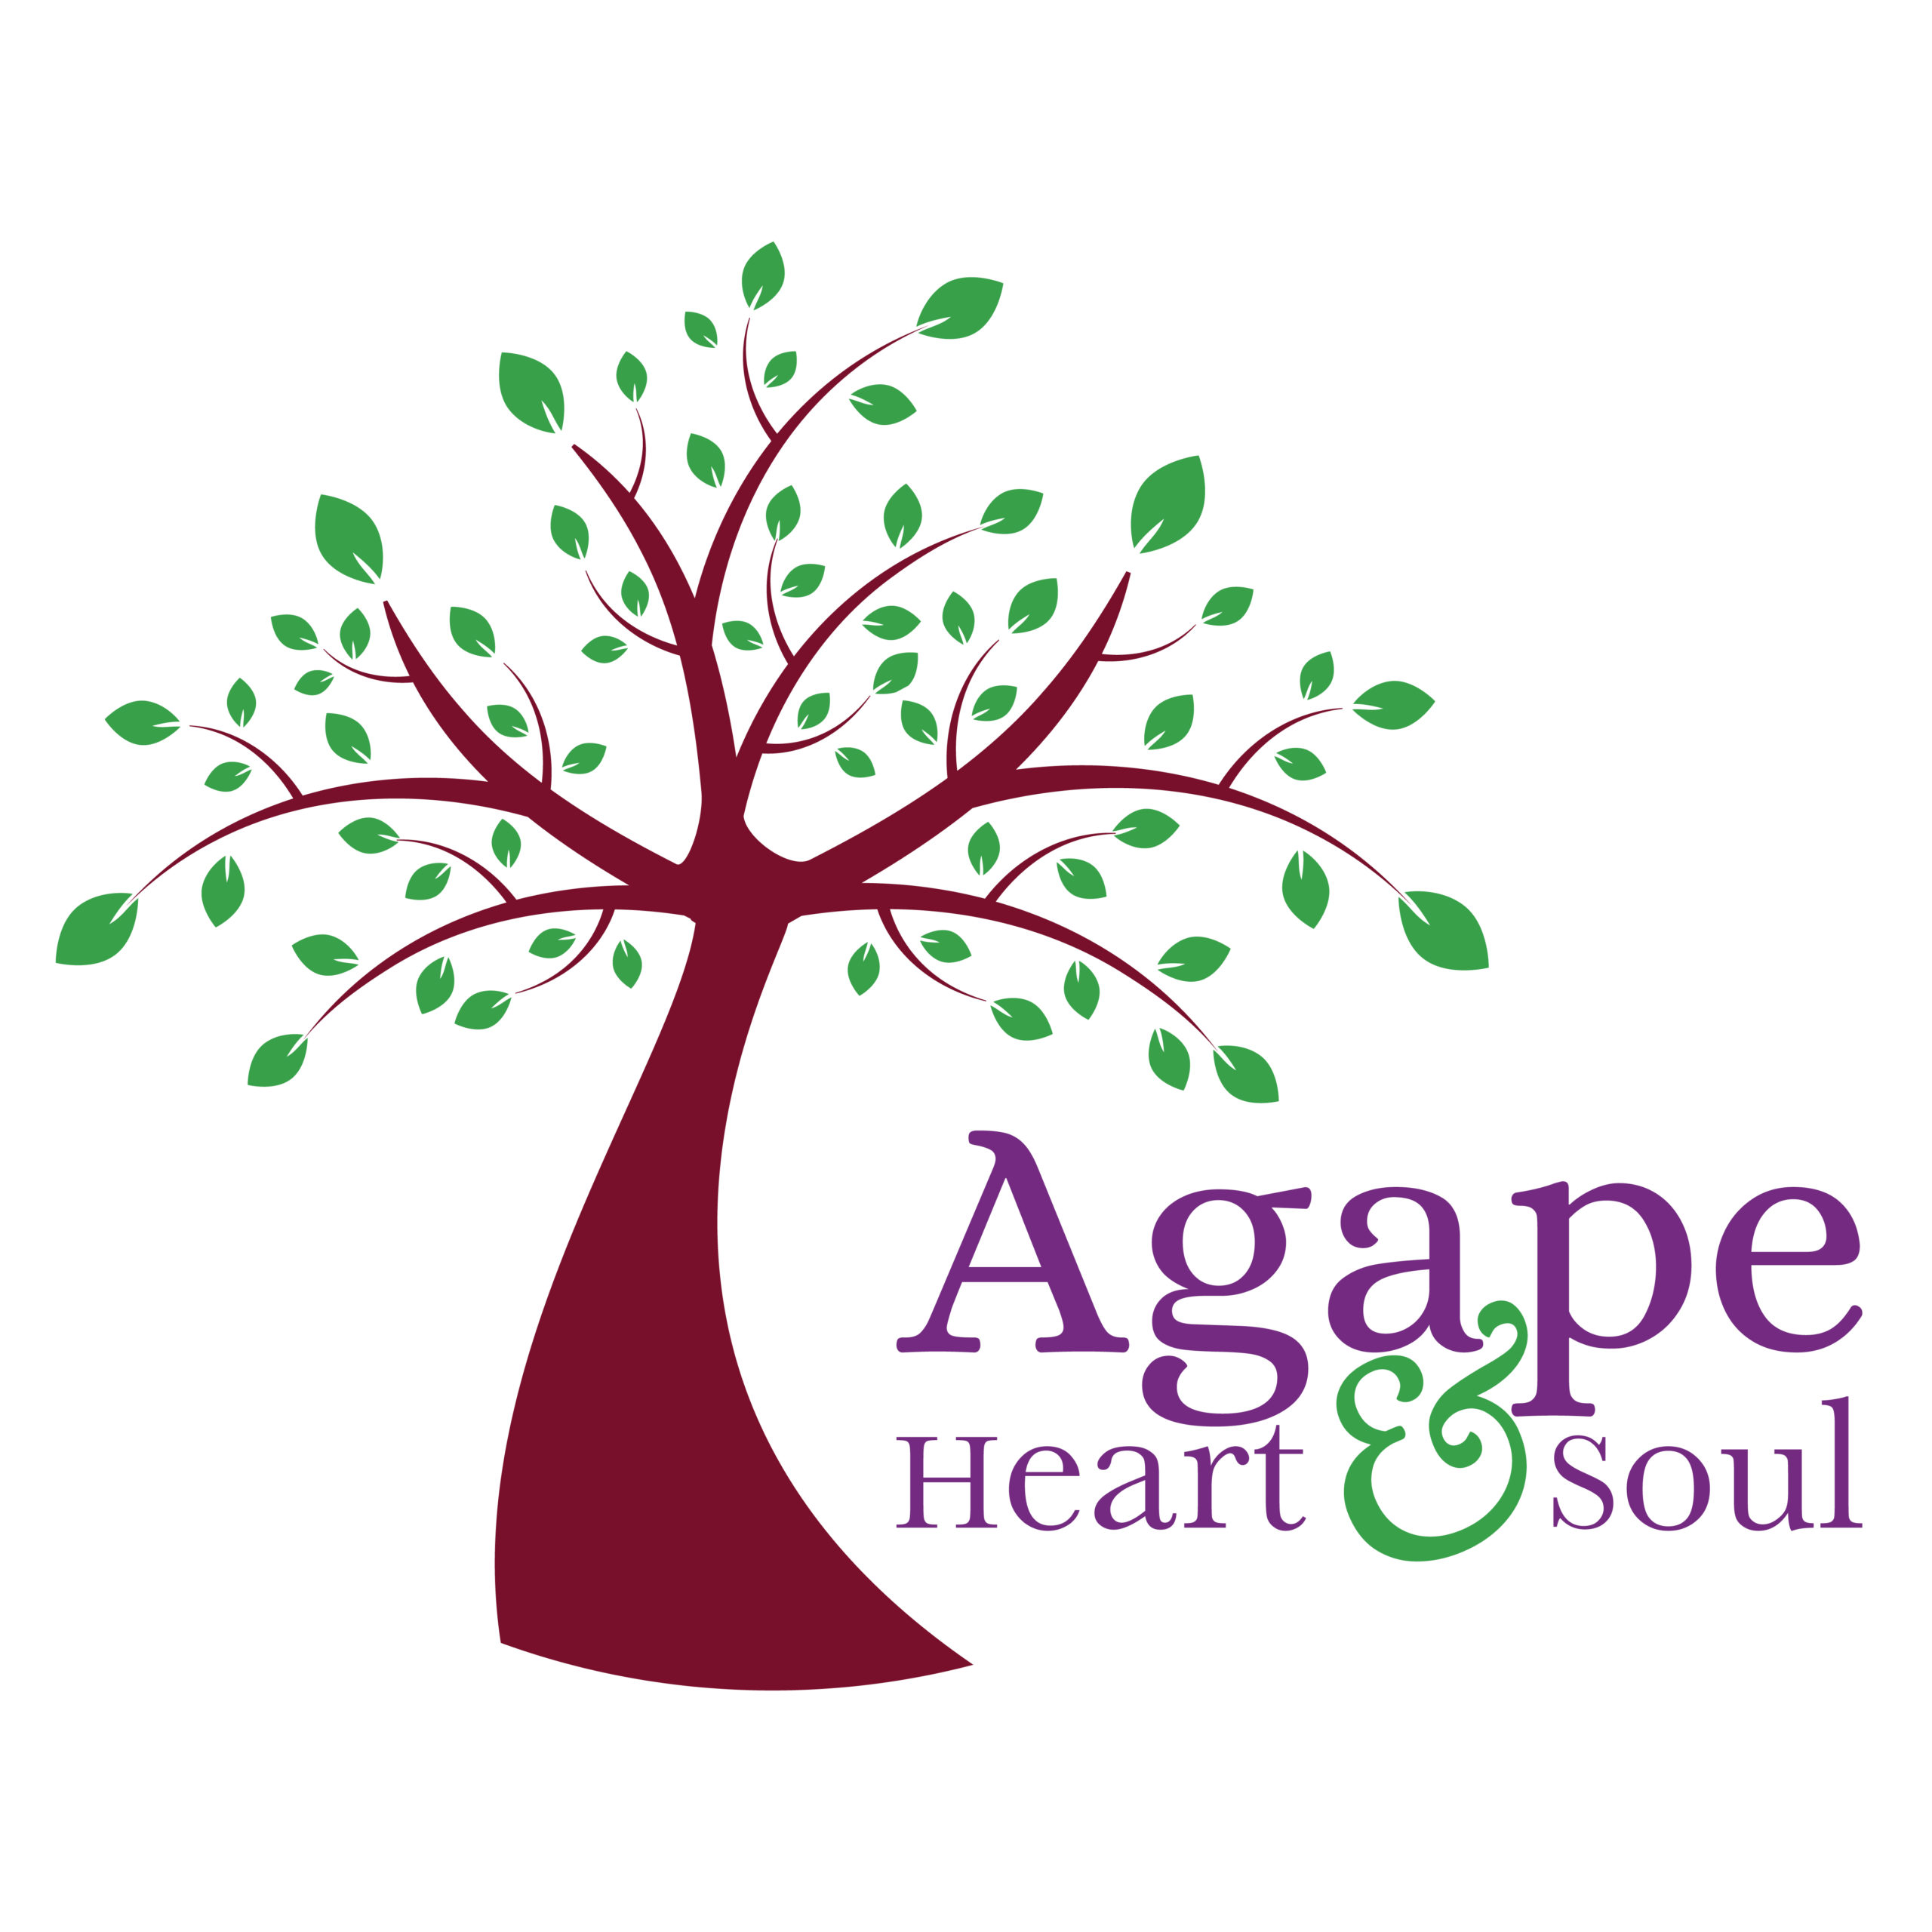 Agape Heart & Soul